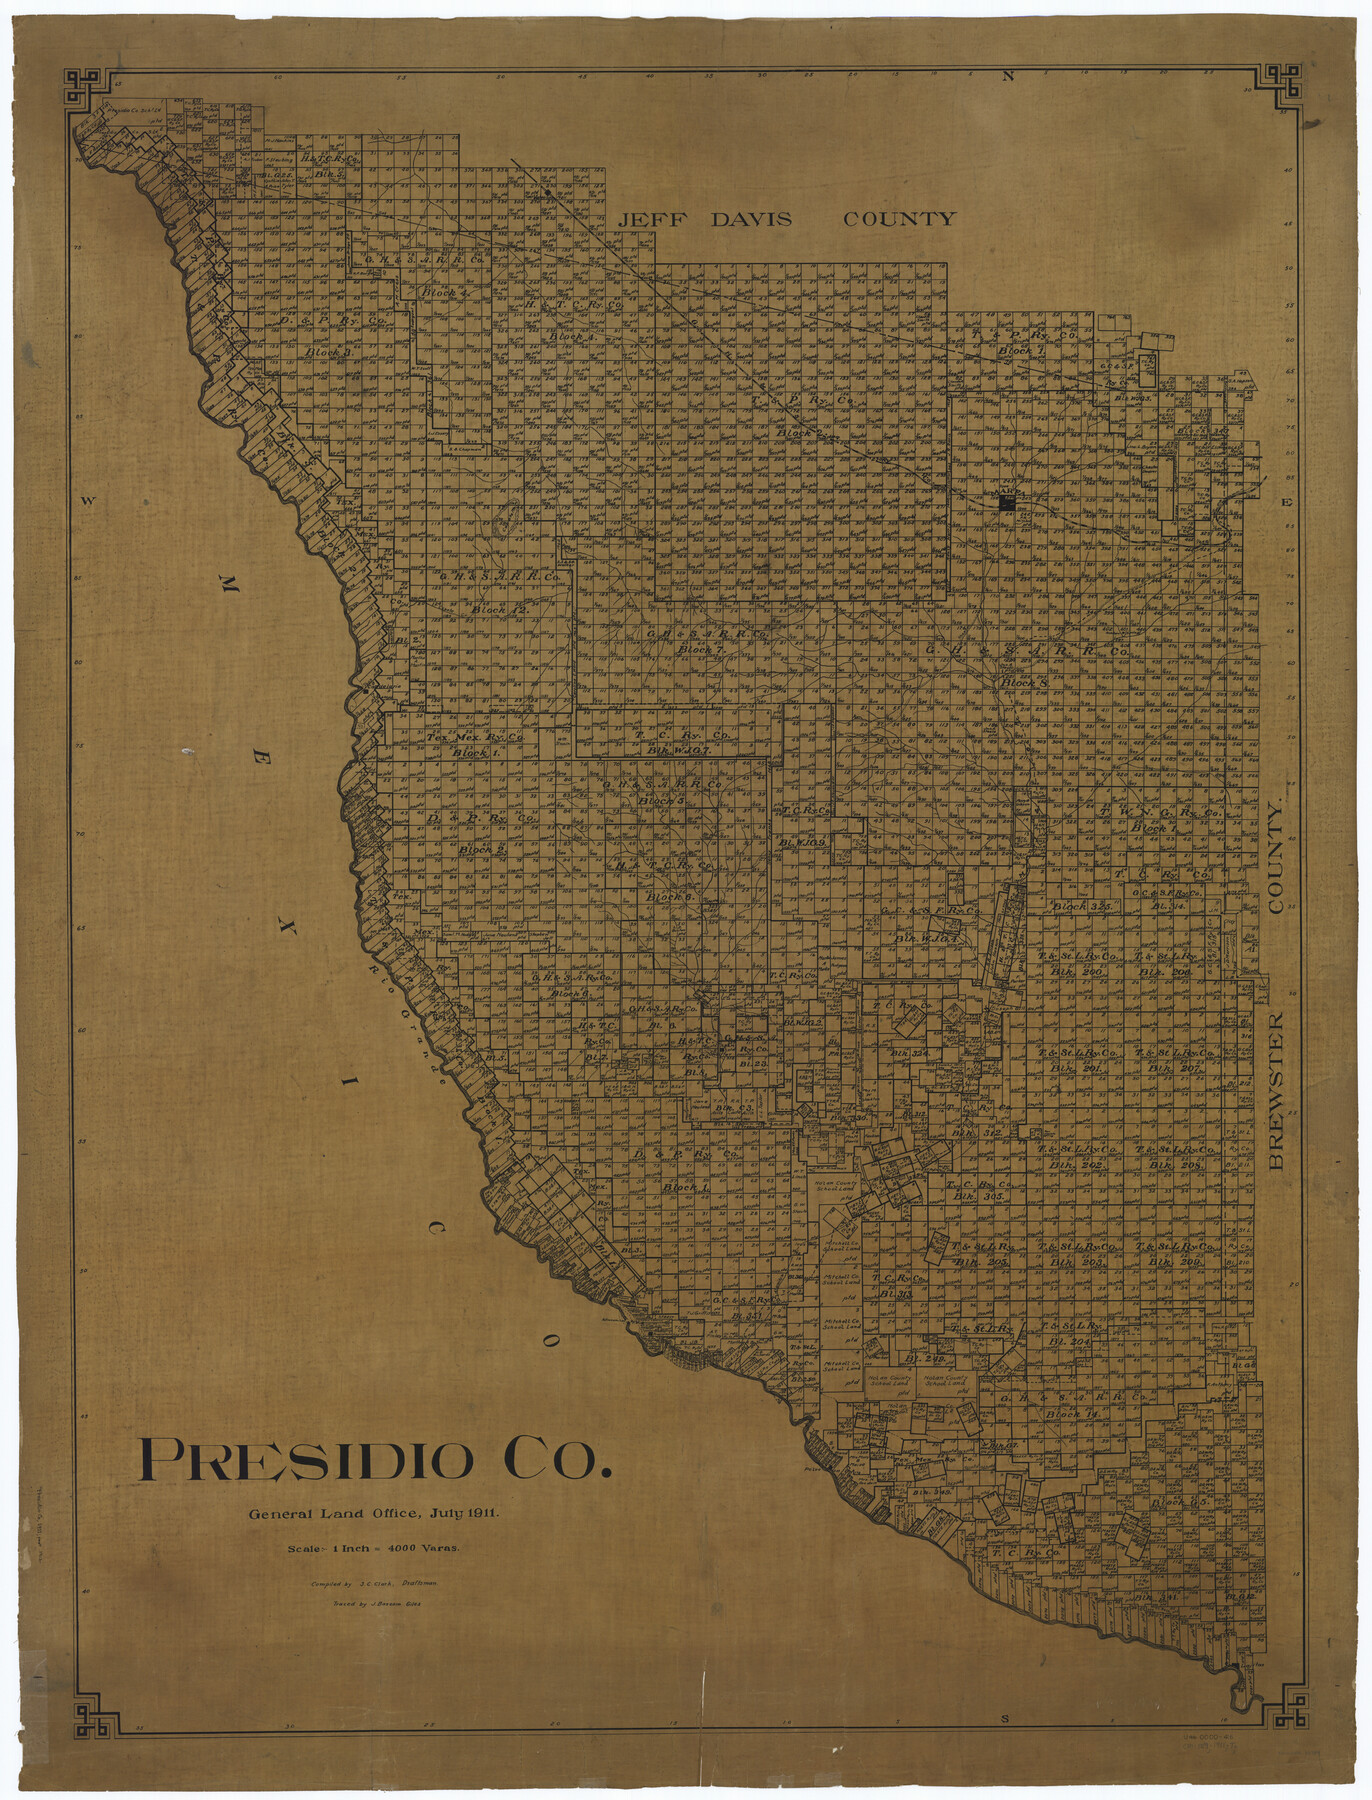 66989, Presidio Co., General Map Collection